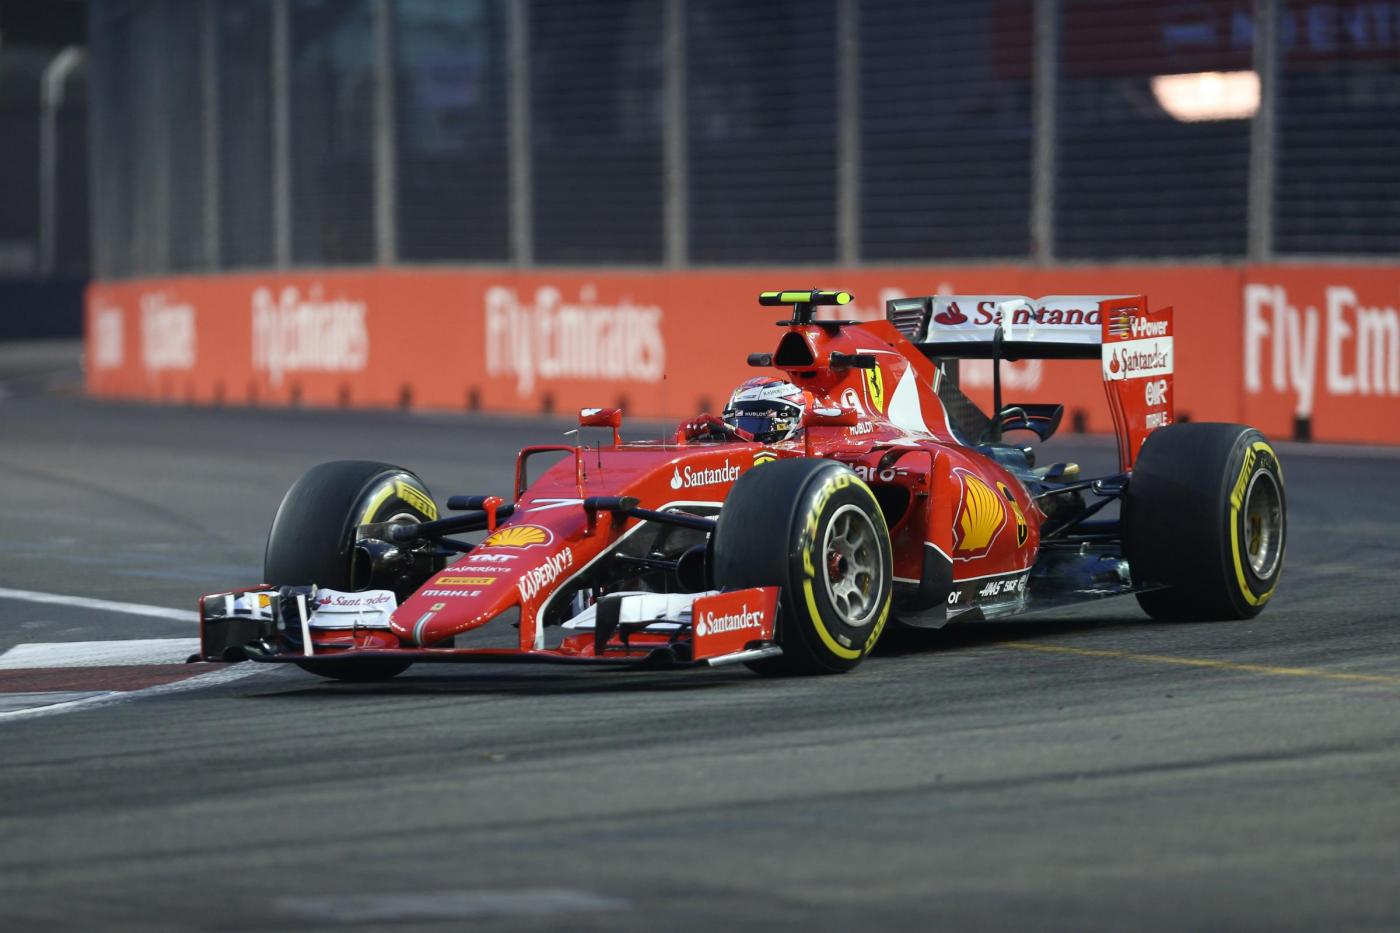 F1, Gp Singapore domenica 16 settembre: analisi e presentazione del circuito del Gran Premio di Formula 1